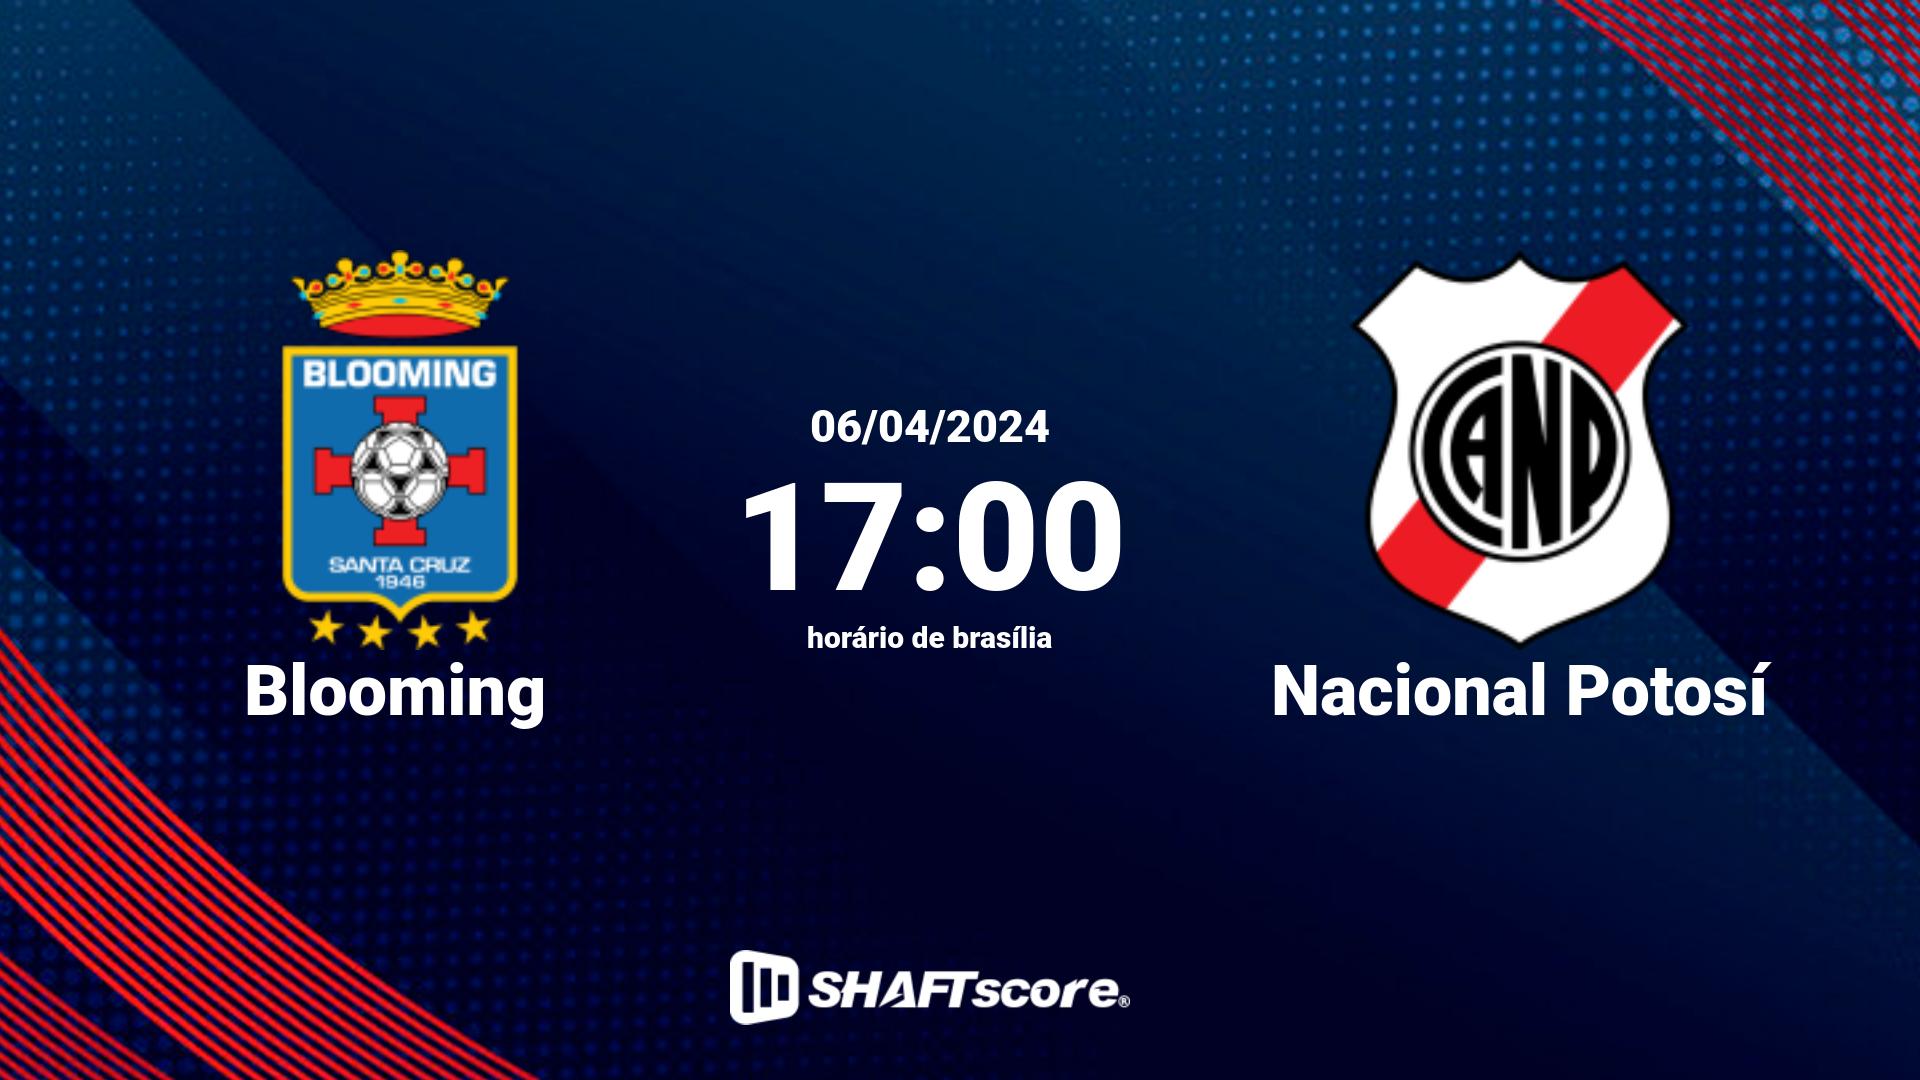 Estatísticas do jogo Blooming vs Nacional Potosí 06.04 17:00